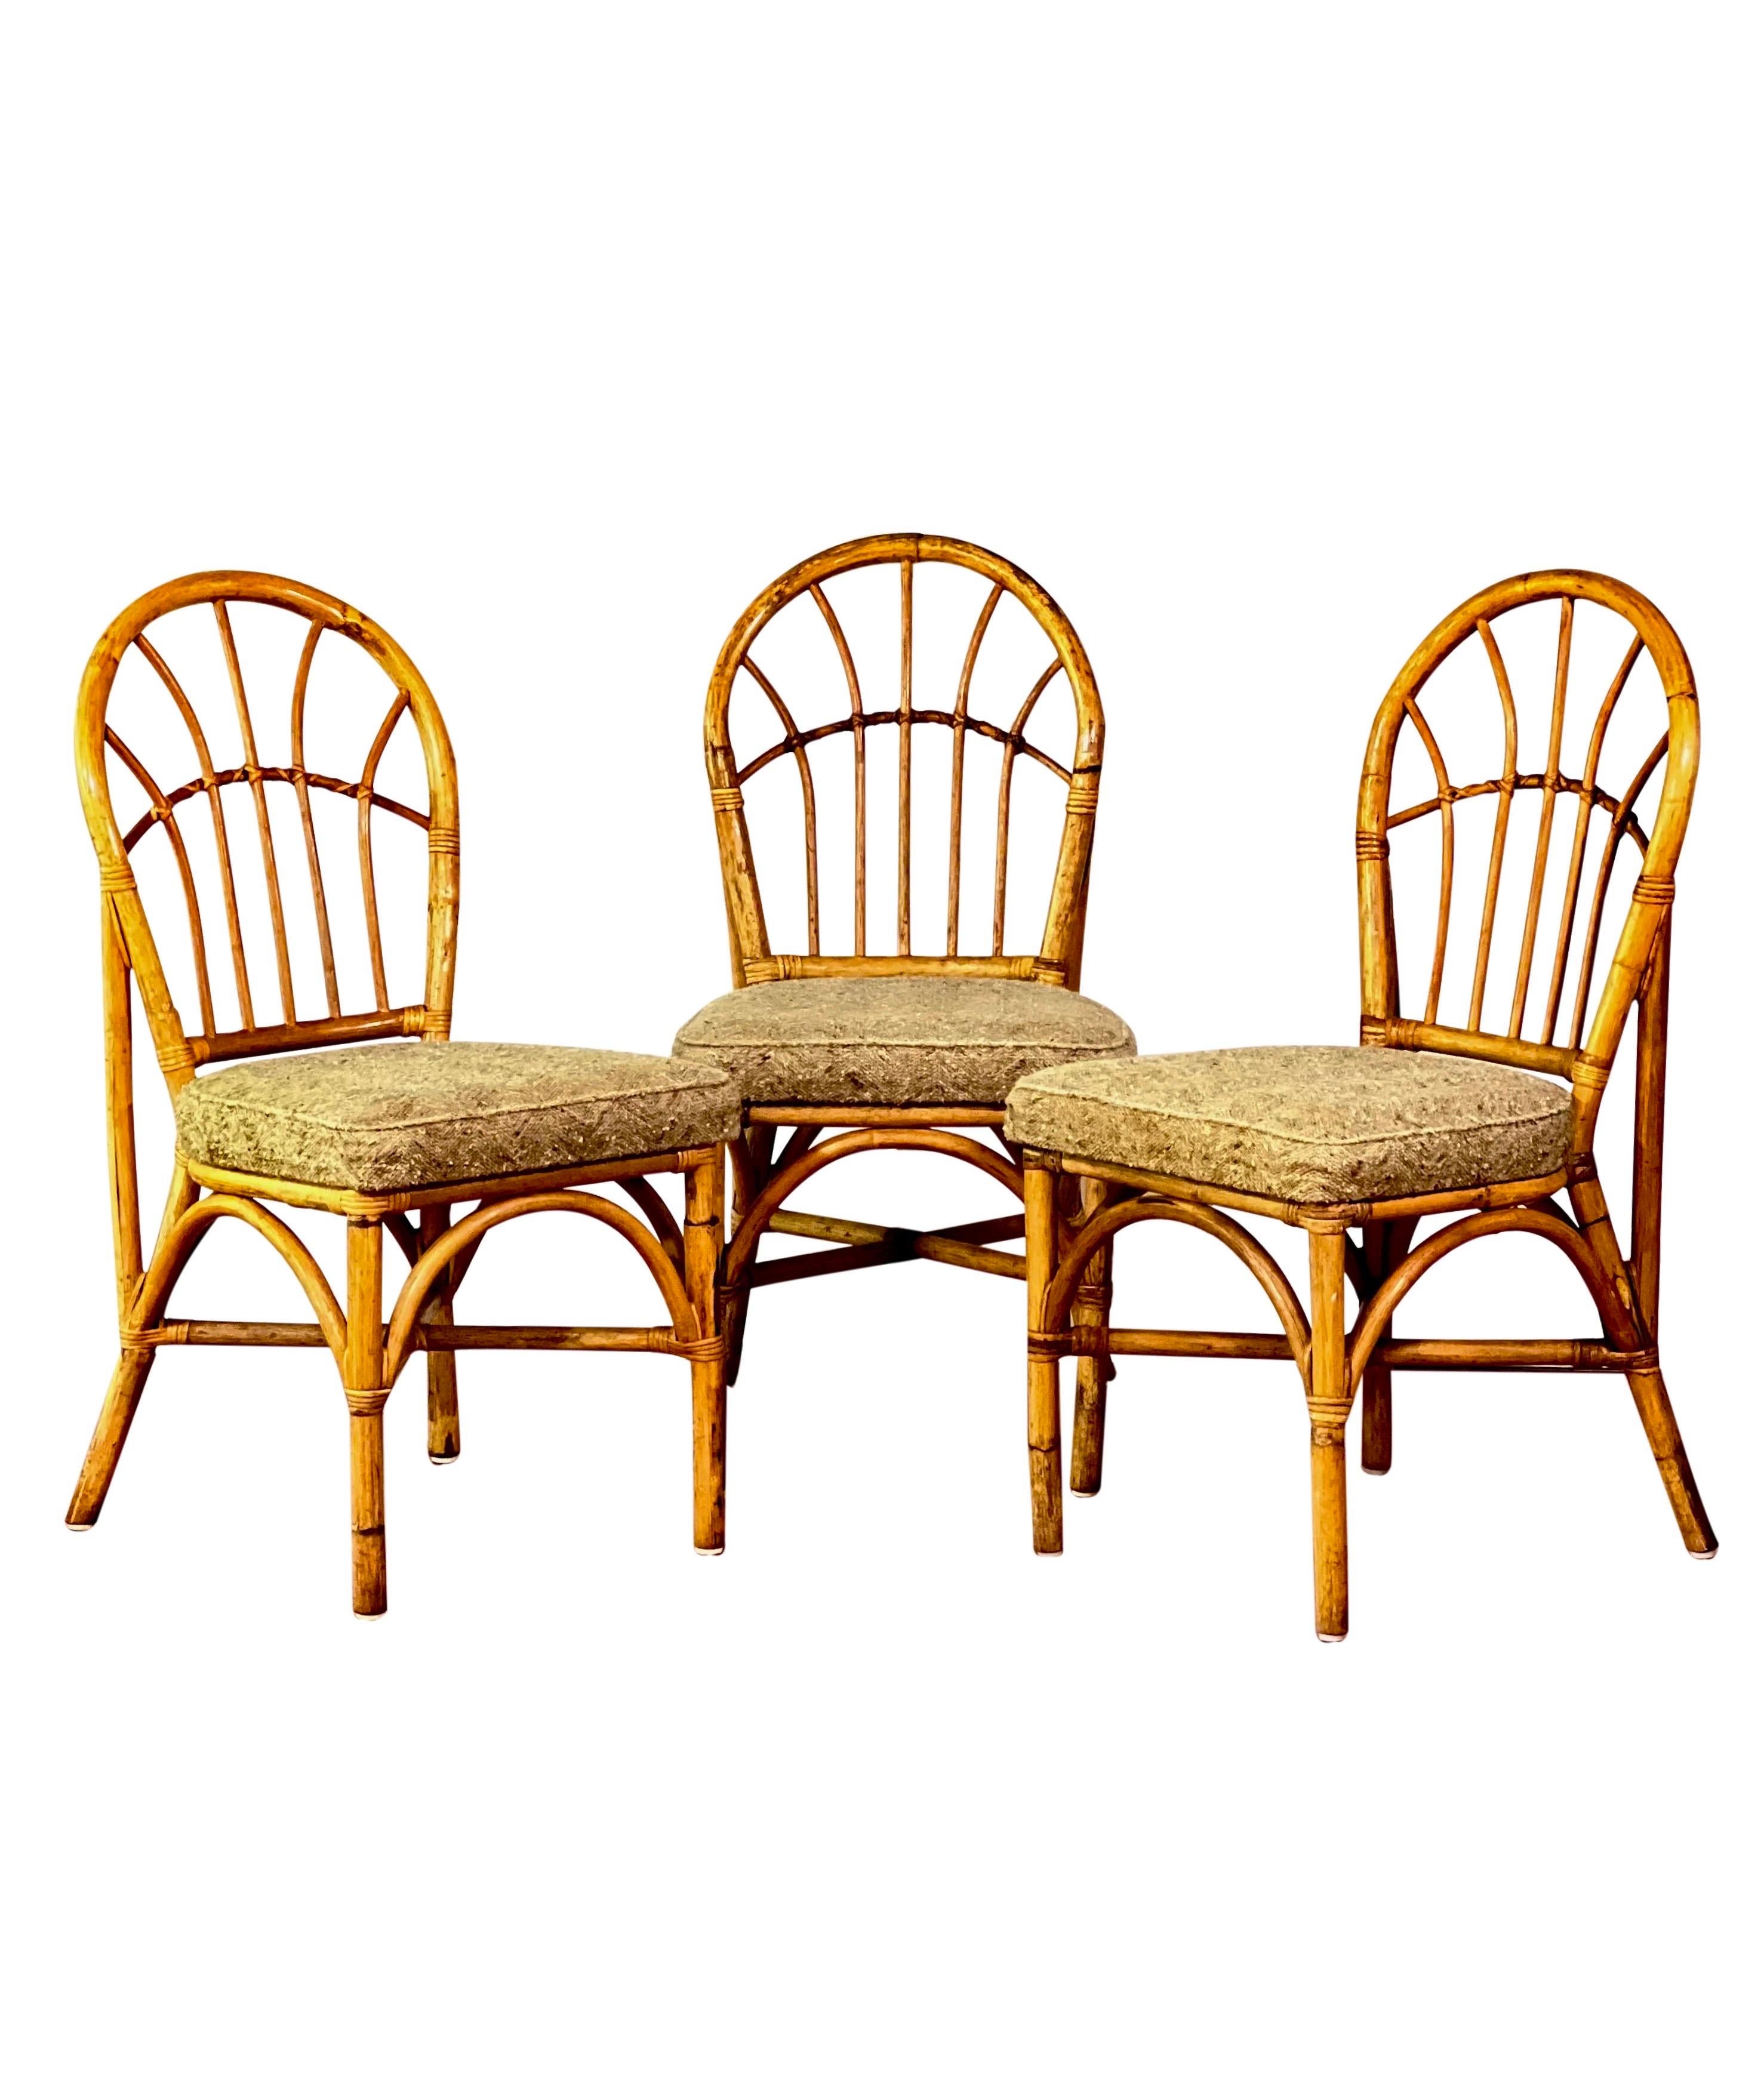 Satz von 4 gepolsterten Vintage-Esszimmerstühlen aus Bambus, 1960er Jahre.

Die Stühle sind mit einem strukturierten Fischgrätenmuster aus Wolle in einer neutralen Hafermehlfarbe gepolstert. Die Kissen sind am Rahmen befestigt und in gutem